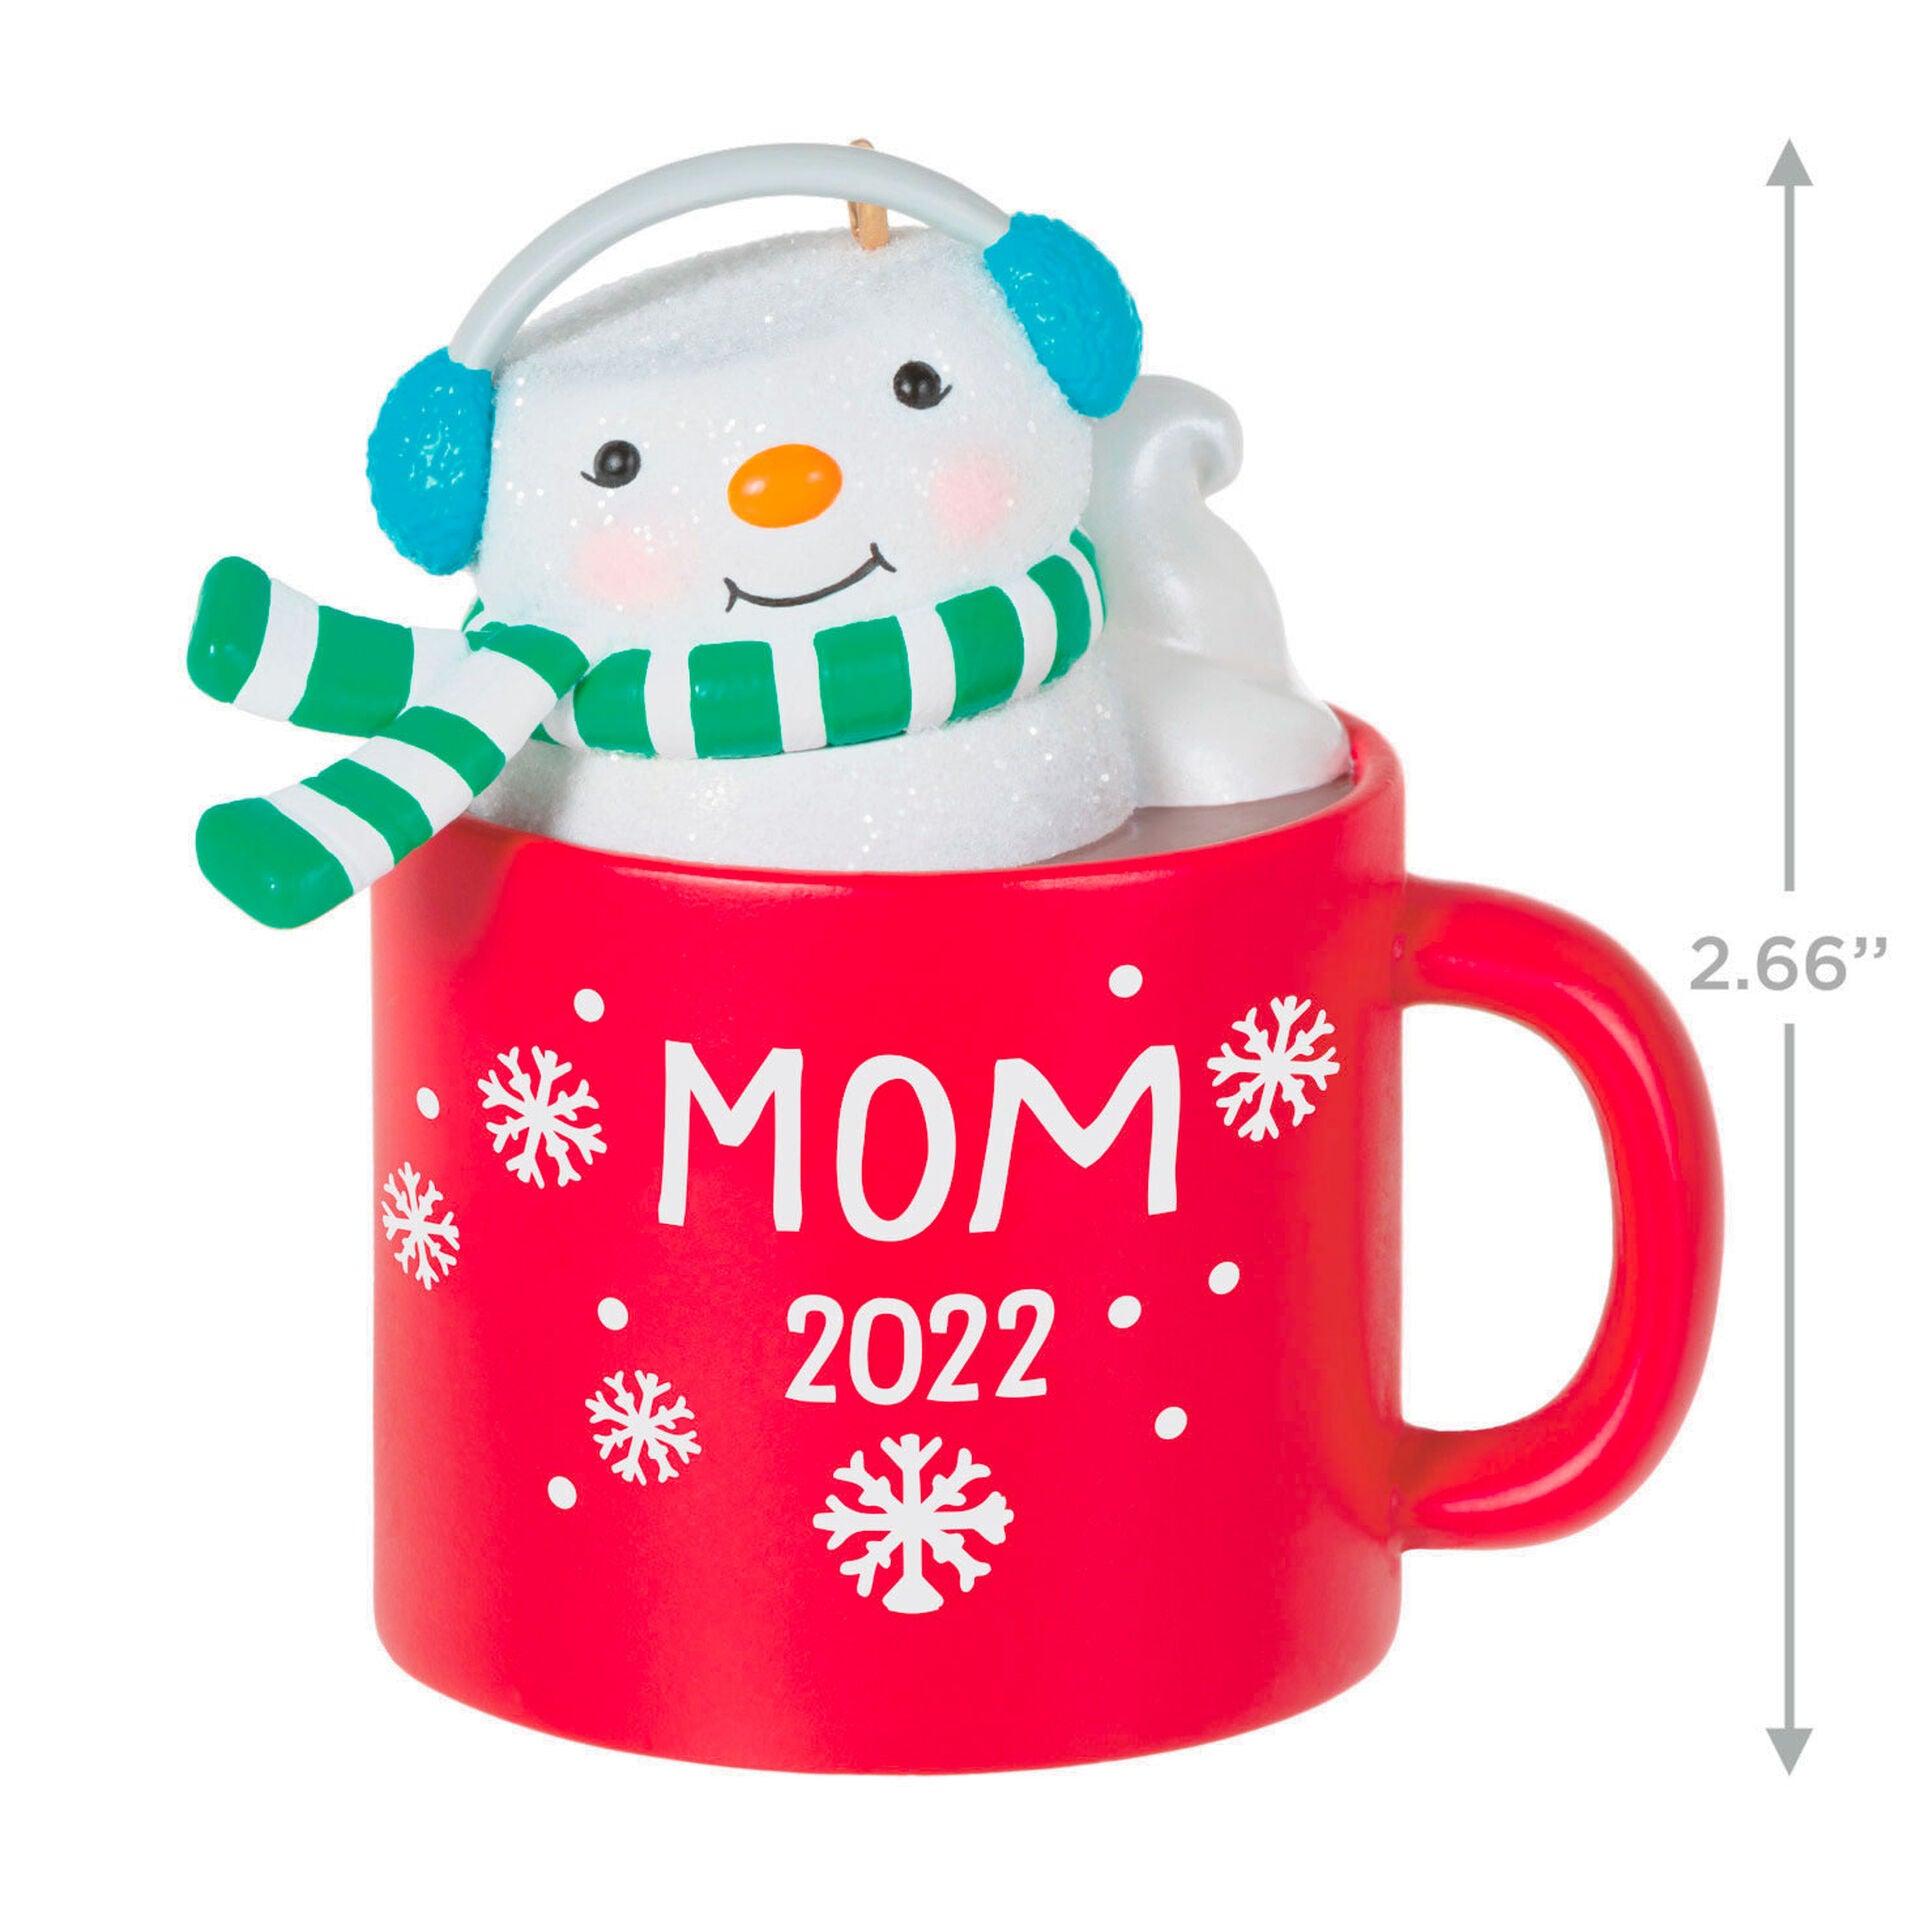 Mom Hot Cocoa Mug 2022 Ornament